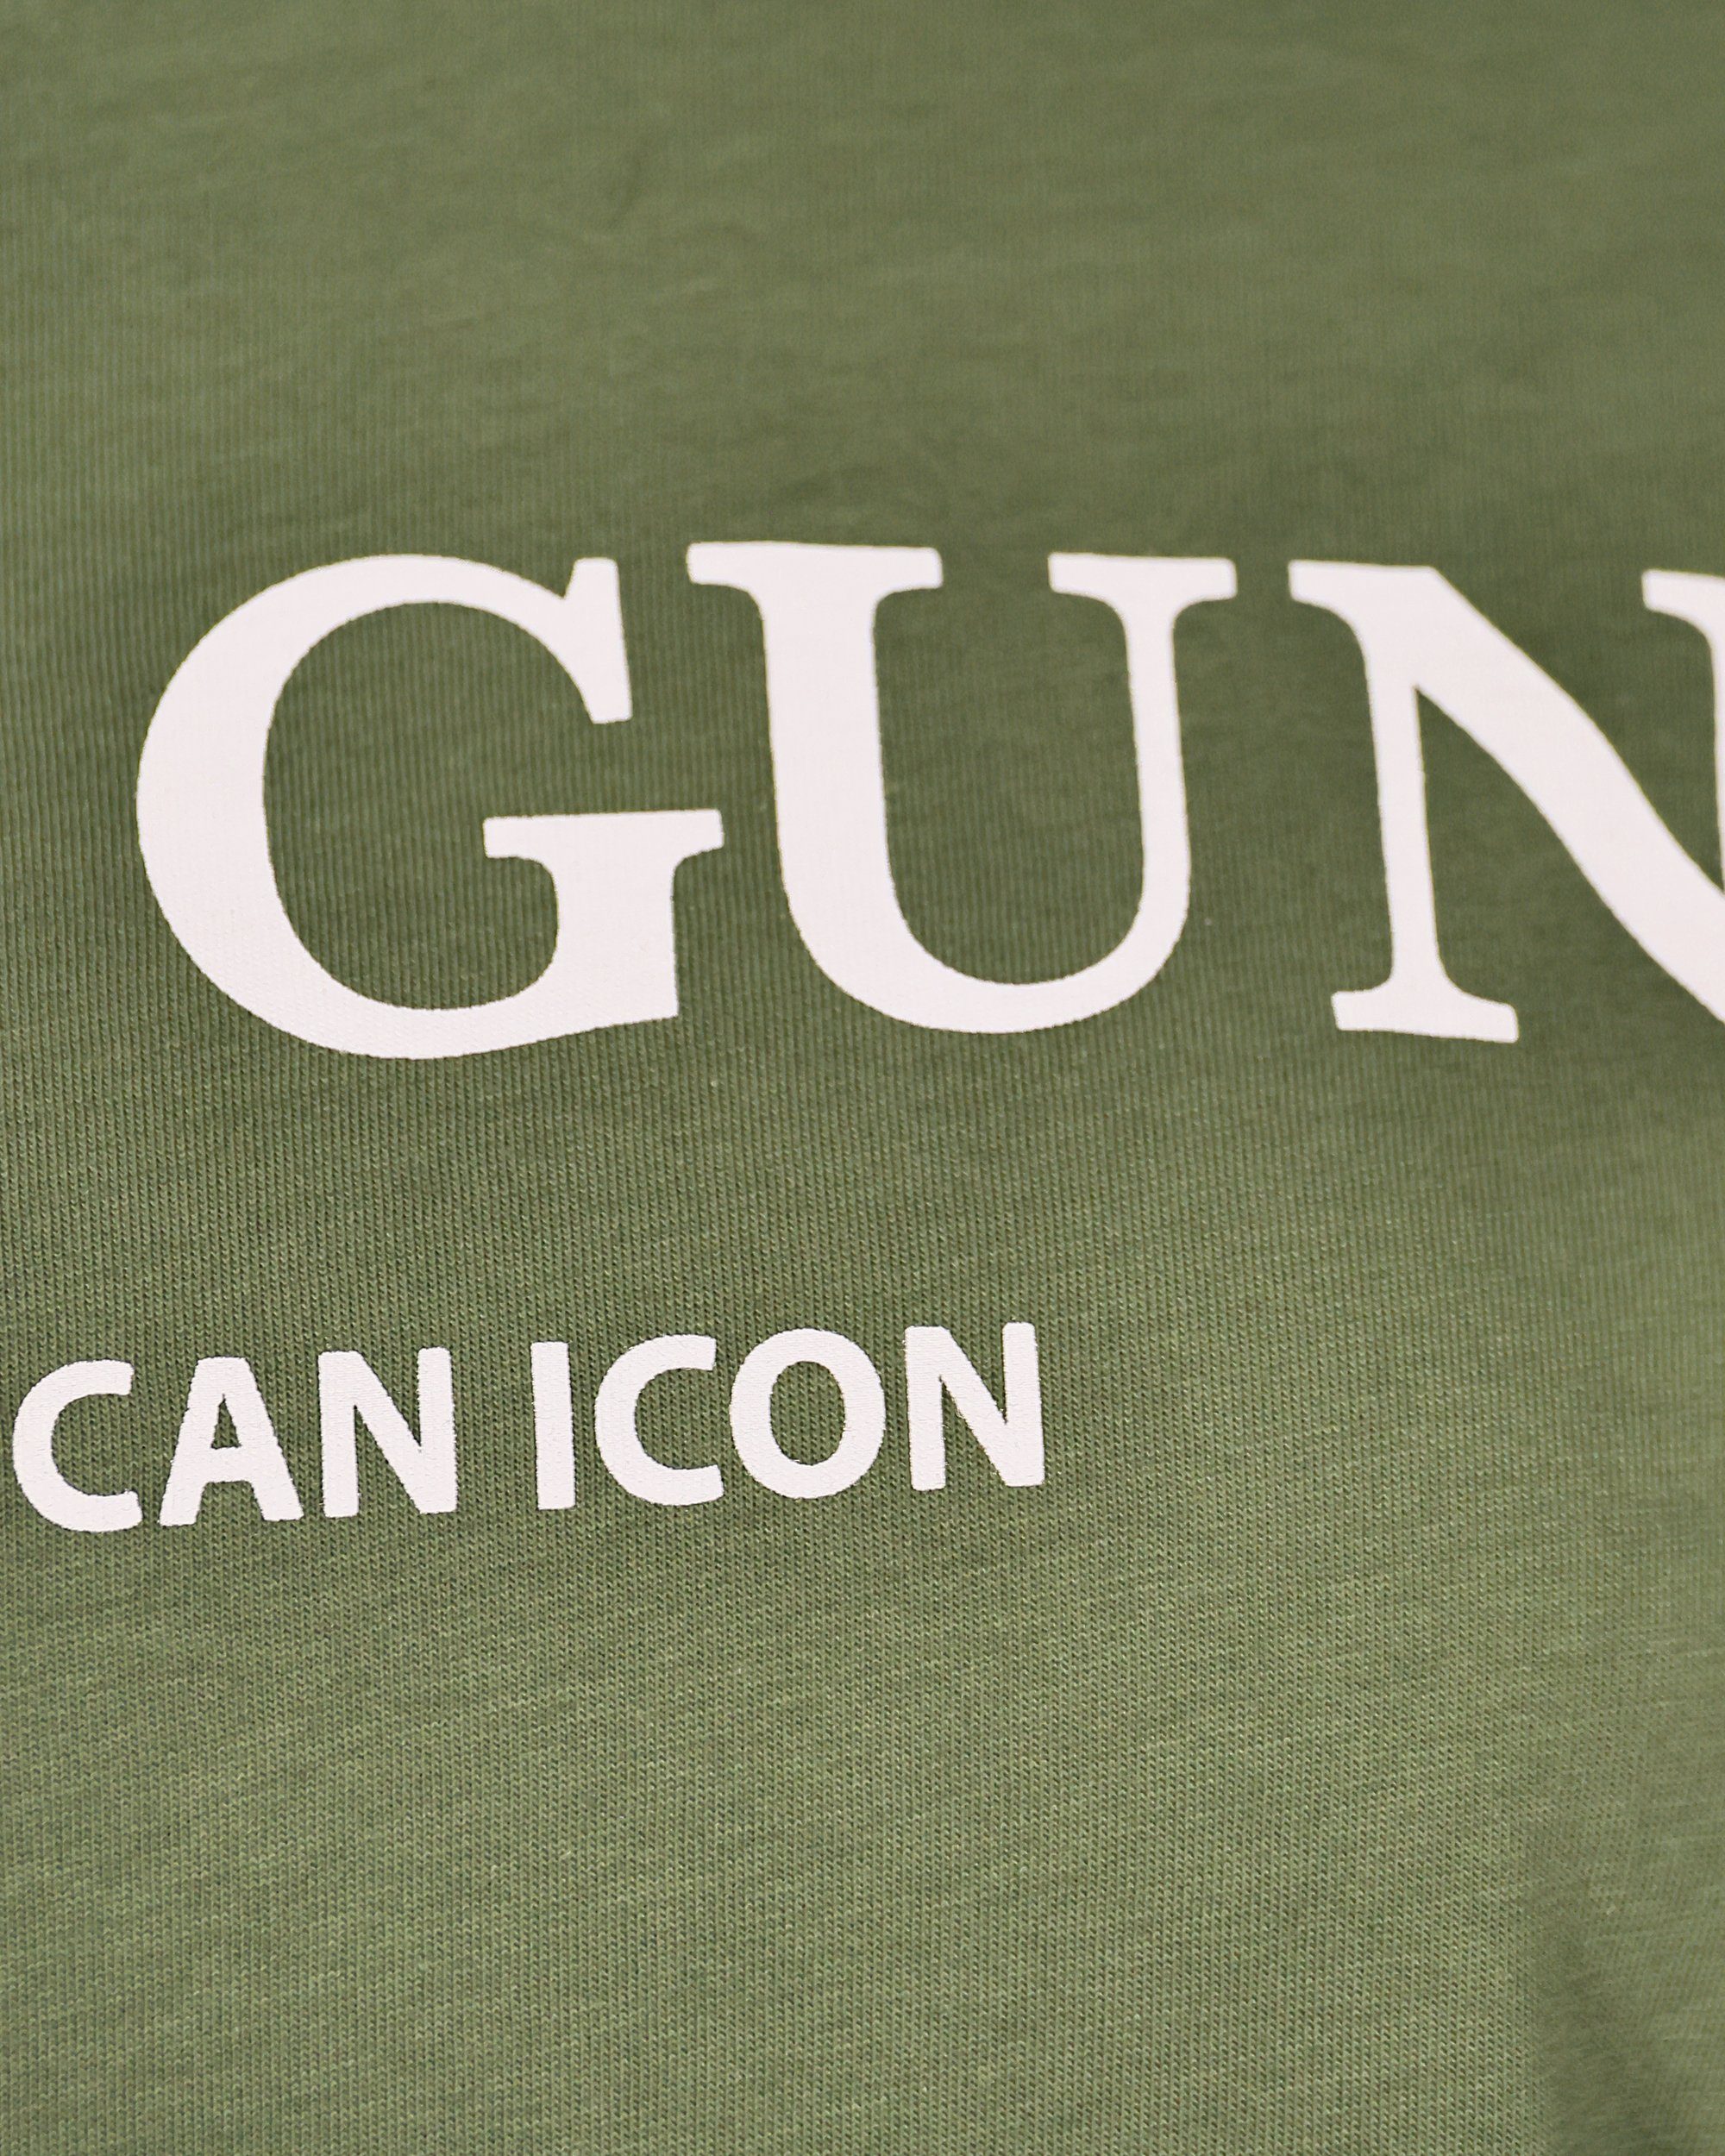 TOP GUN T-Shirt TG20214001